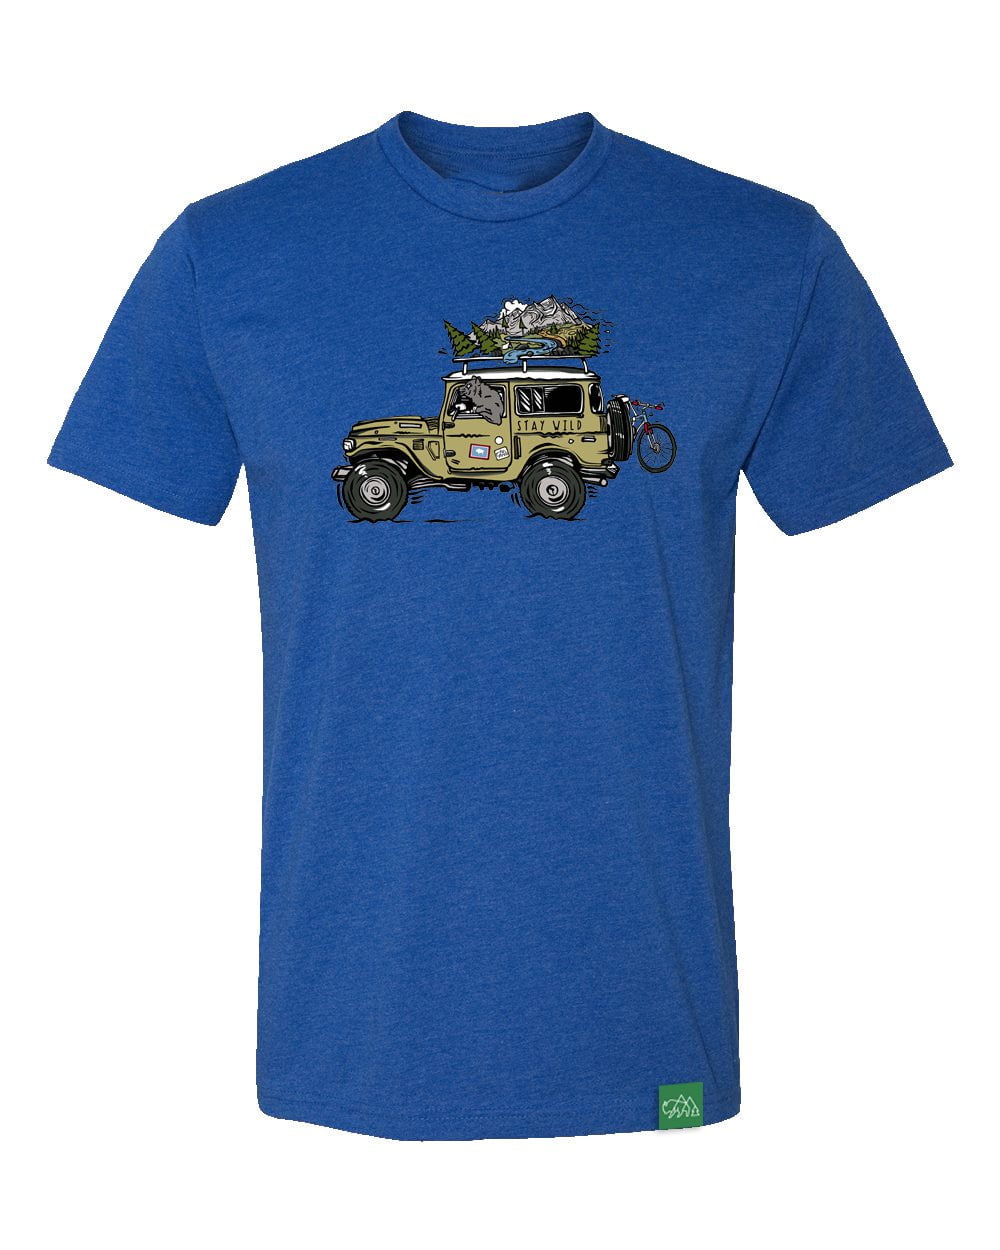 Stay Wild Wyoming T-Shirt